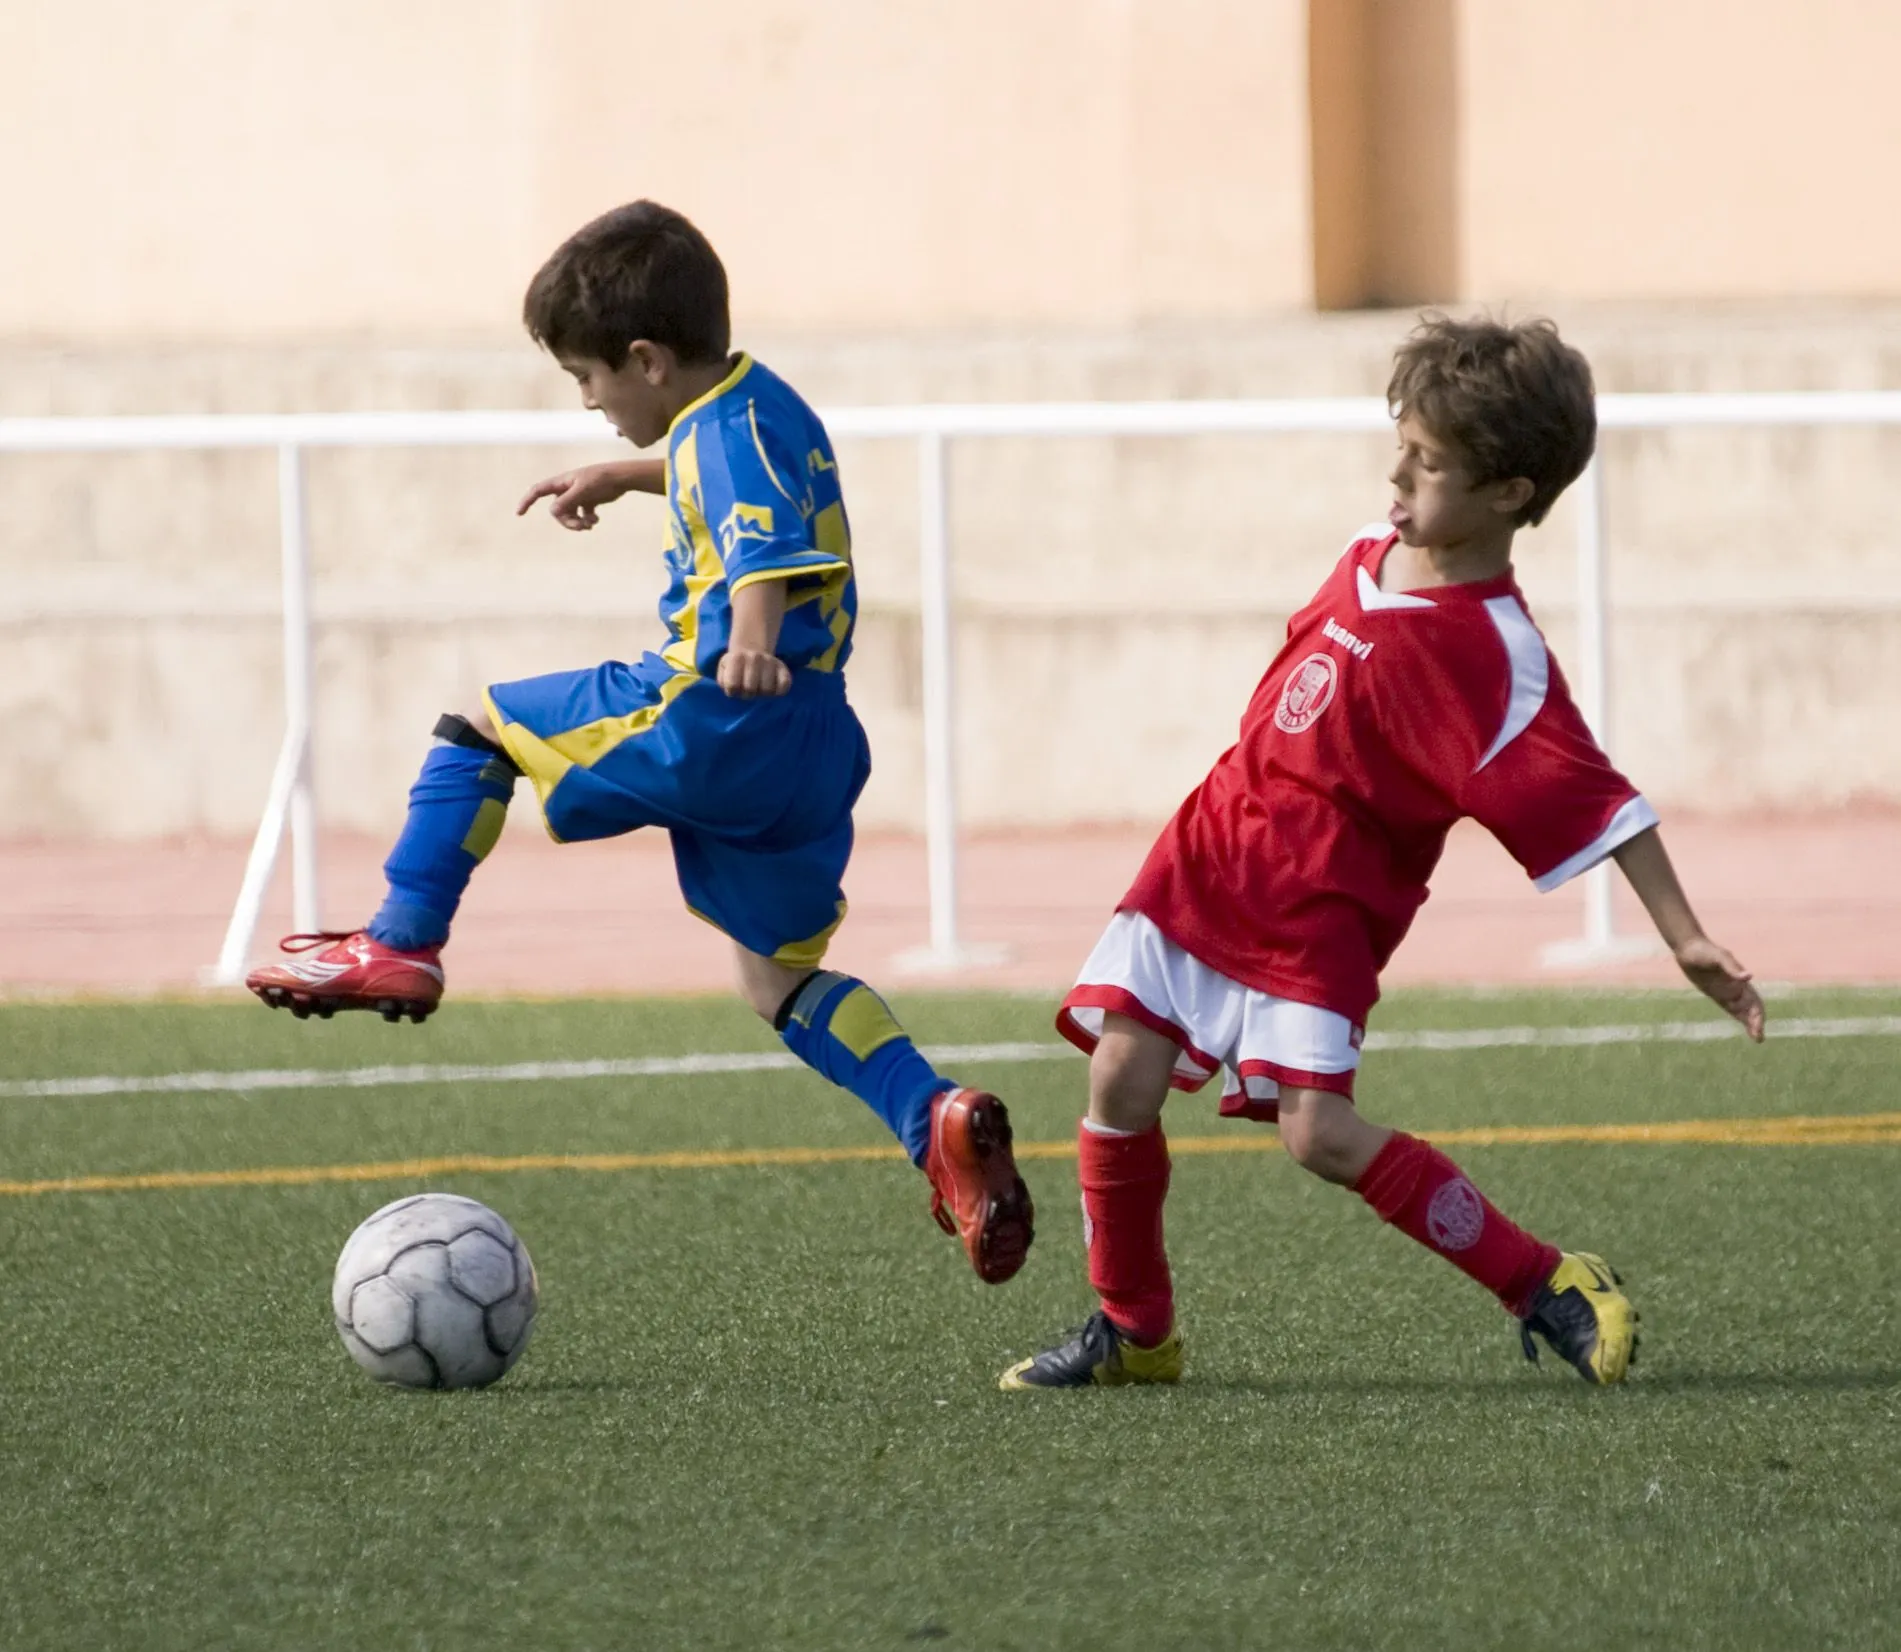 Fotos niños jugando futbol - Imagui